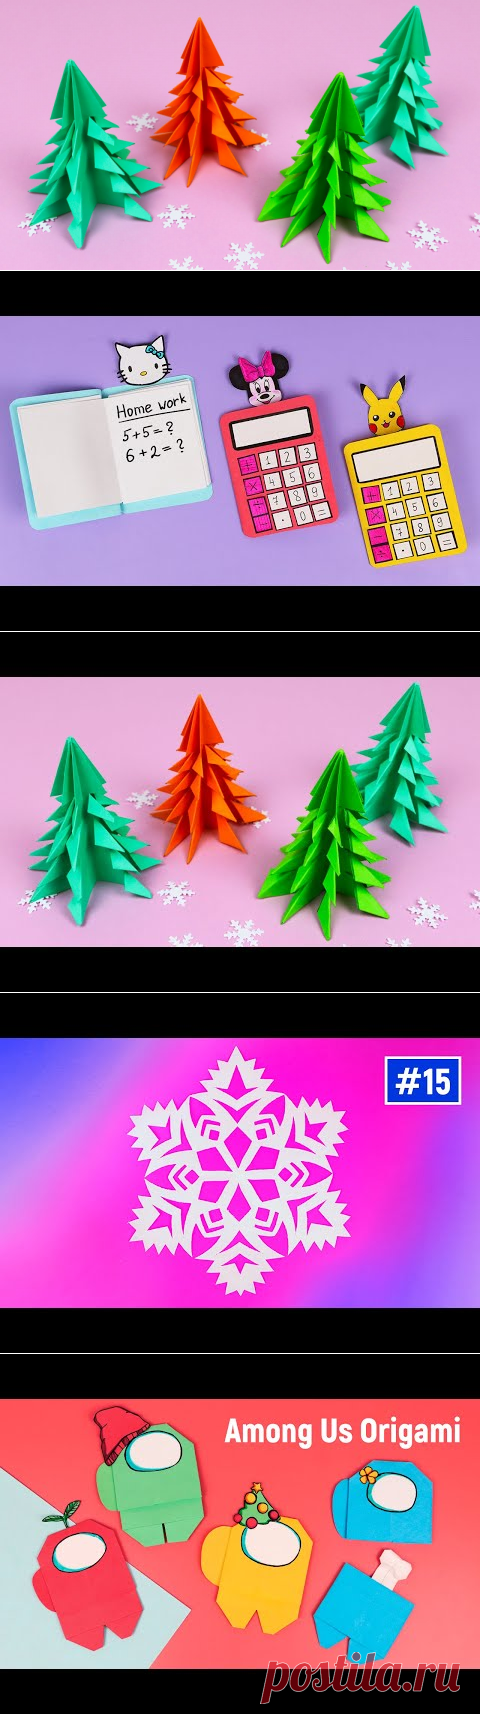 Ёлочка, ёлка из бумаги на Новый год / Как сделать объемную оригами елку, ёлочку своими руками - YouTube